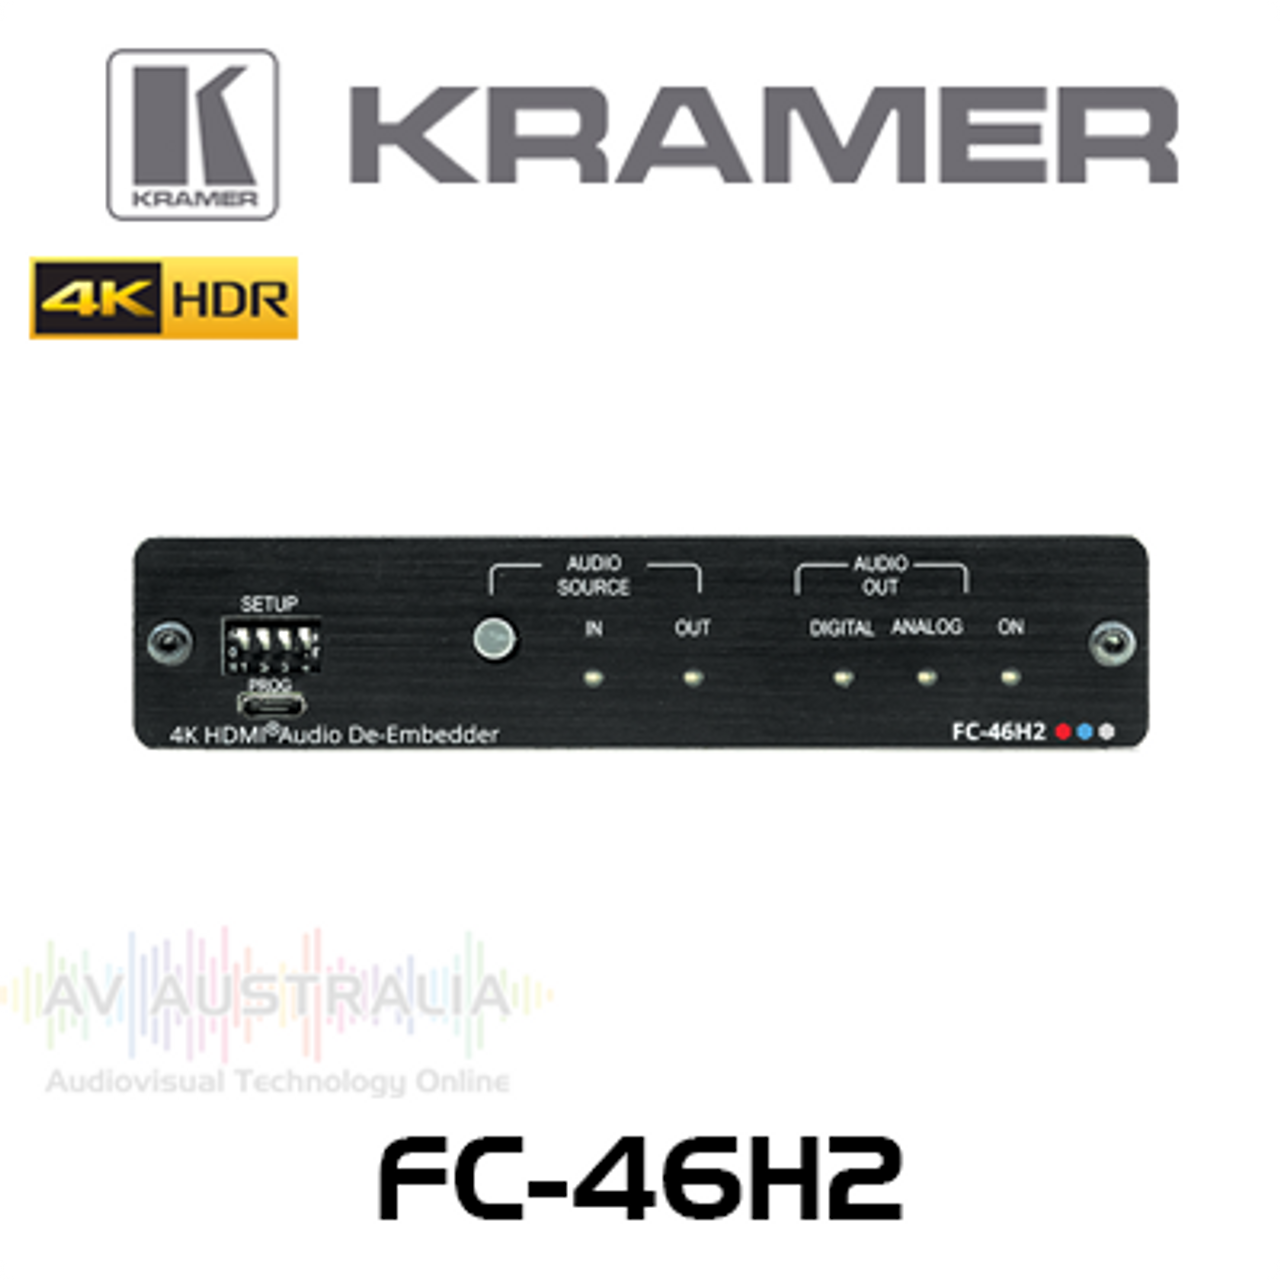 Kramer FC-46H2 4K HDR 4:4:4 HDMI Audio De-Embedder